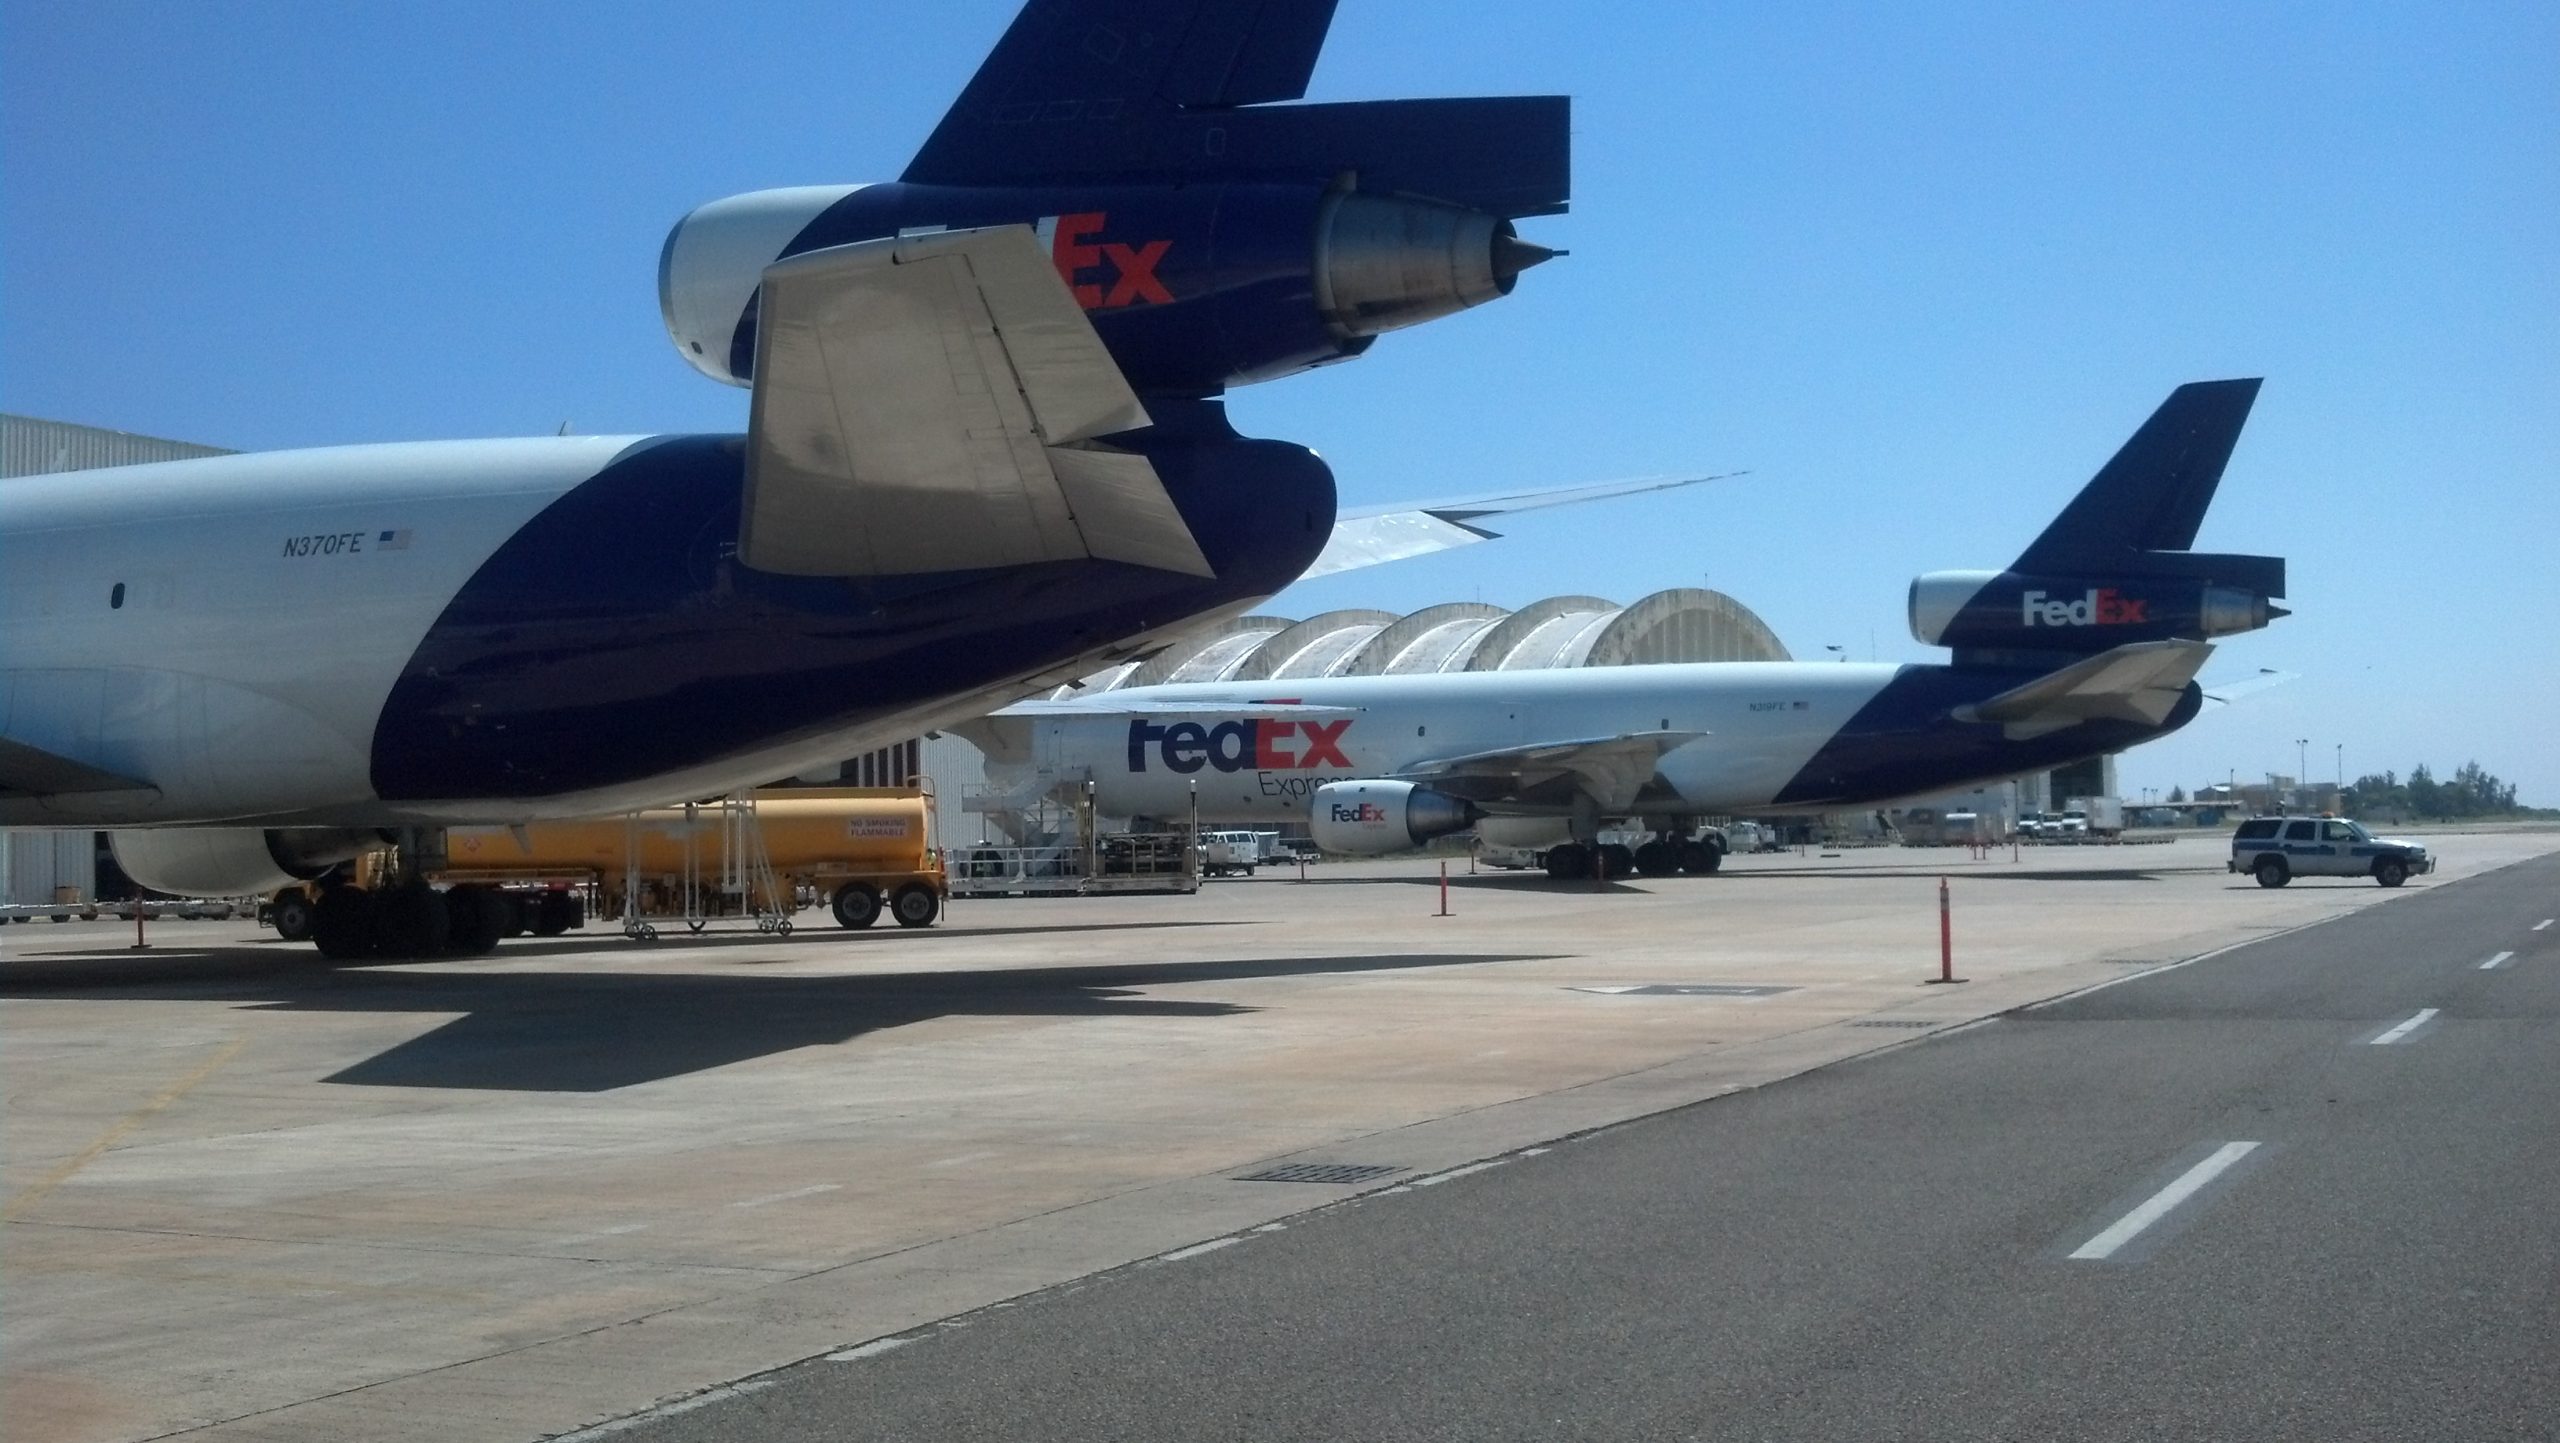 Puertos otorga a FedEx contrato para extender por 10 años las operaciones en el aeropuerto de Aguadilla